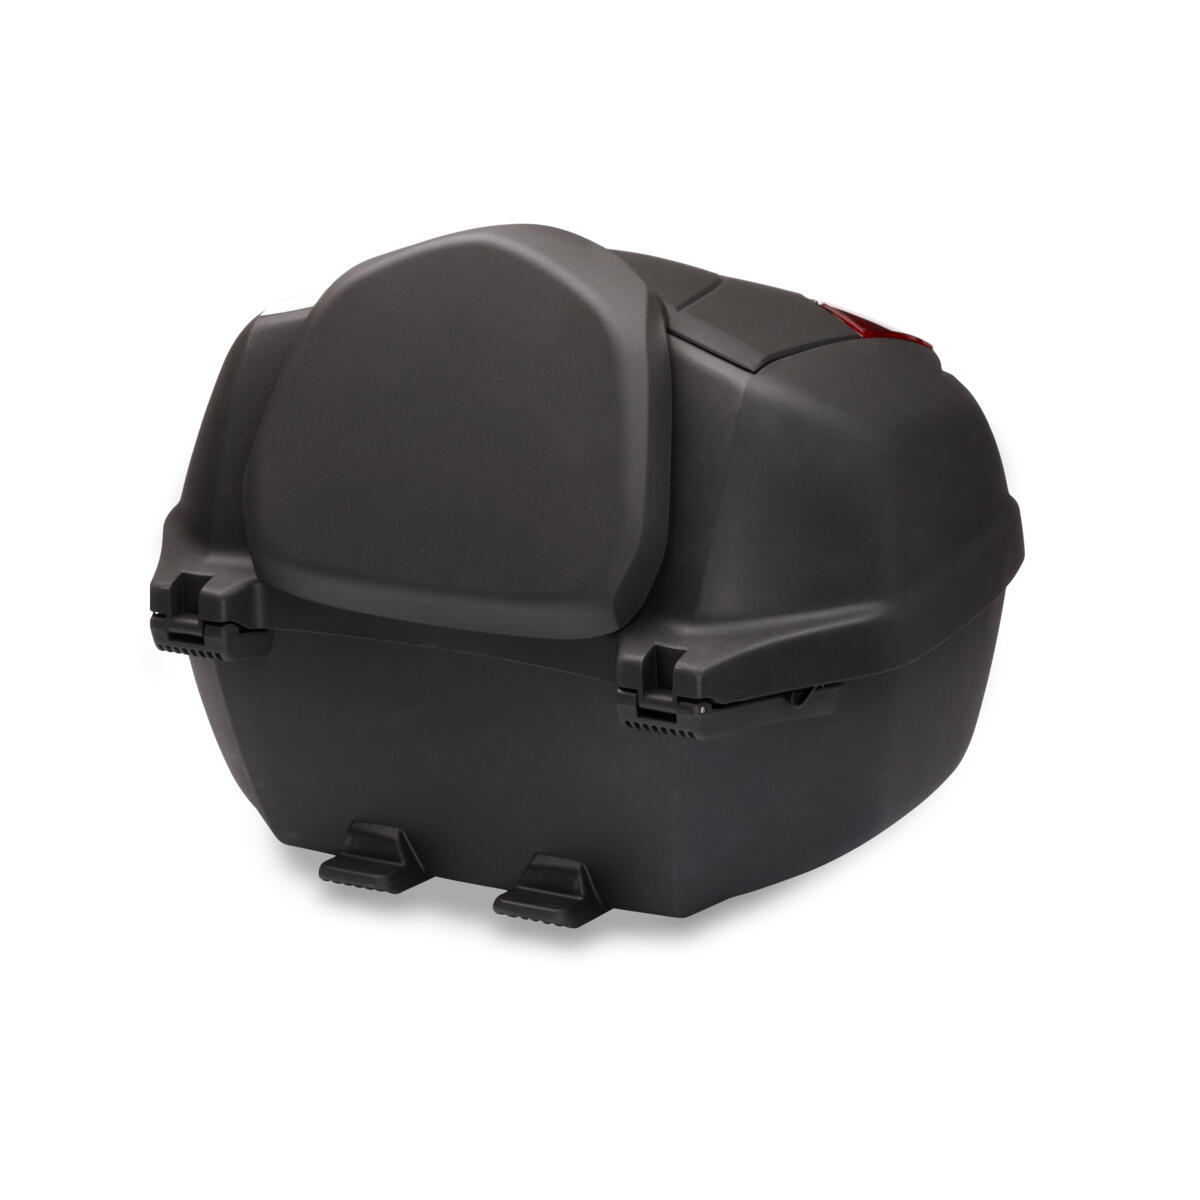 Hvis du bruker TRACER 7 på din daglige tur til jobben i byen, gir den 39-liters låsbare svarte toppvesken Urban Pack deg fleksibilitet til å ta med deg tingene dine trygt og sikkert. Og med en praktisk USB-adapter kan du bruke satellittnavigasjon eller strømenheter under full kontroll